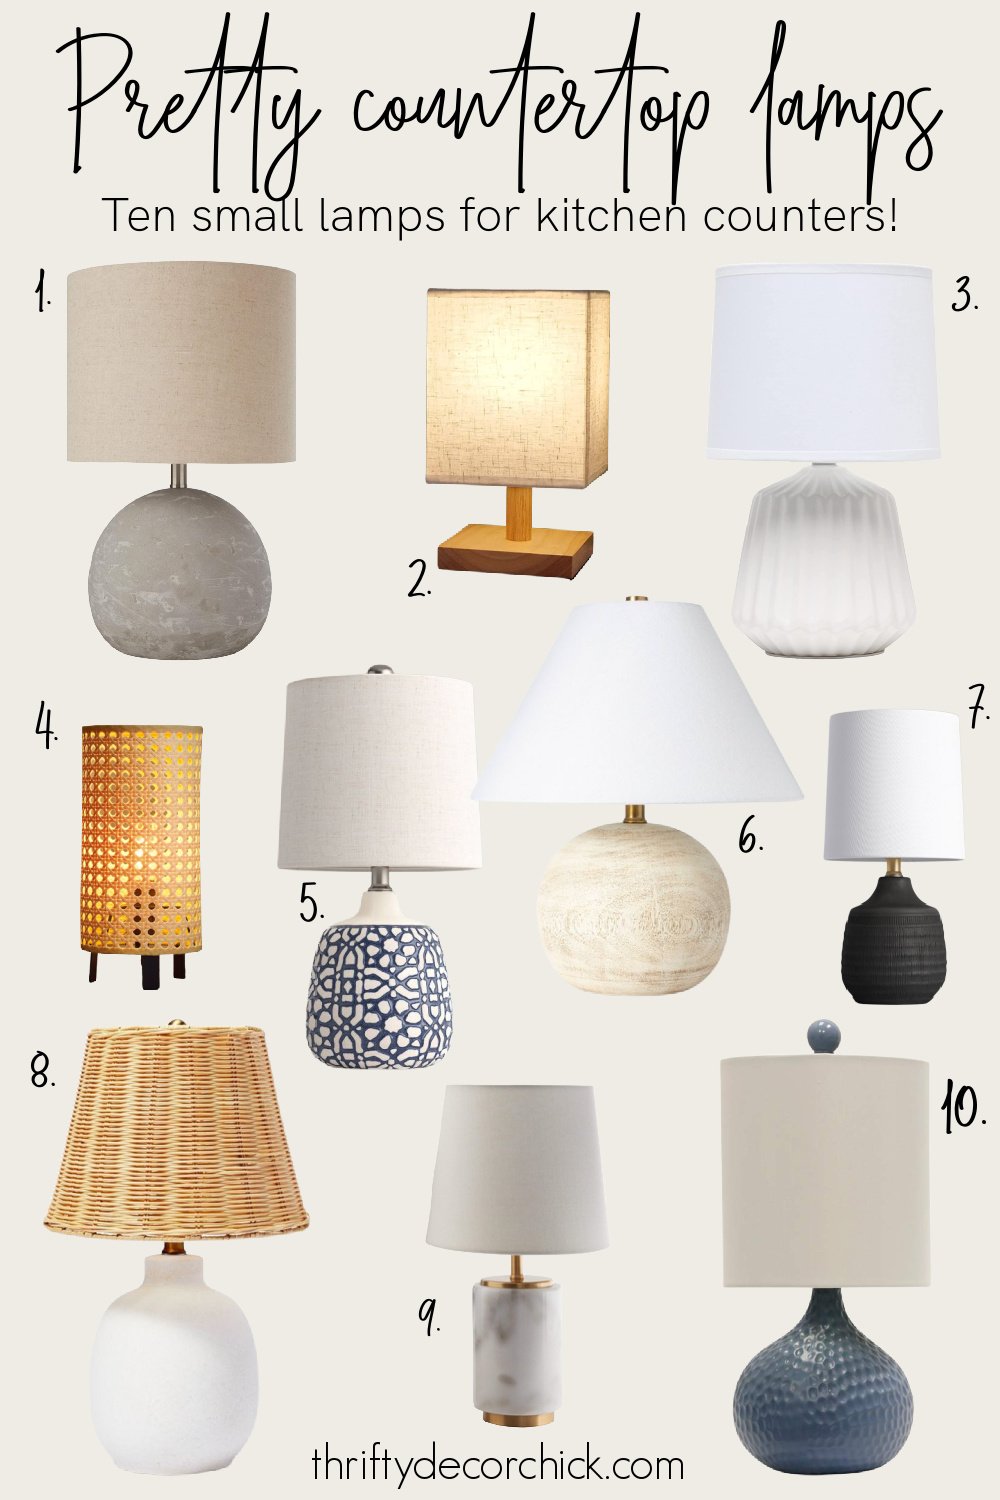 10 countertop lamp options